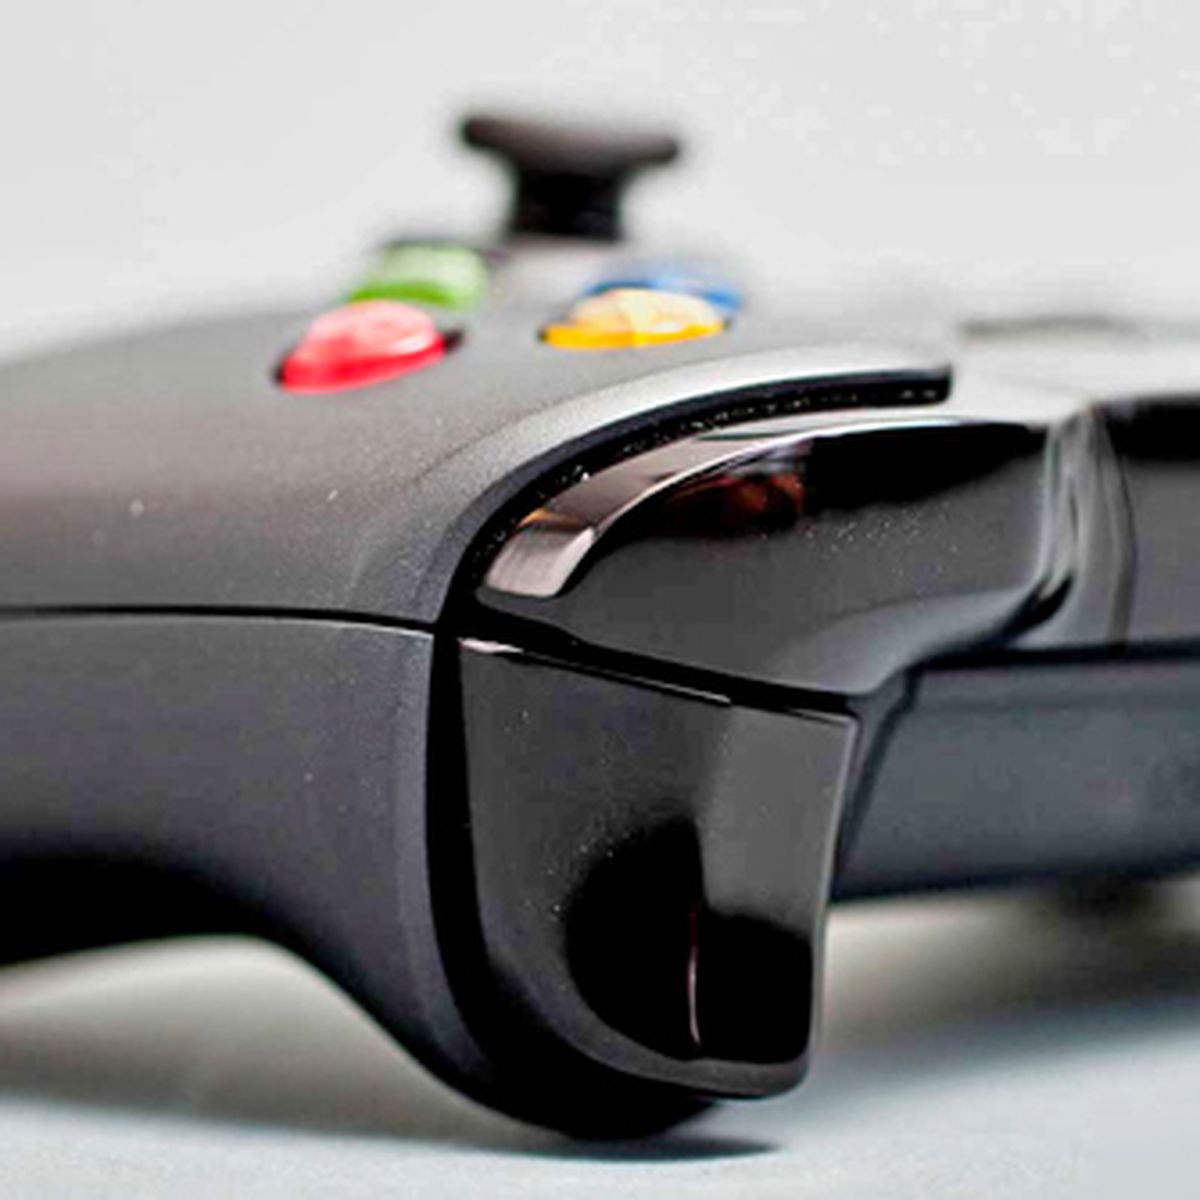 Cómo compartir juegos en Xbox One durante la cuarentena